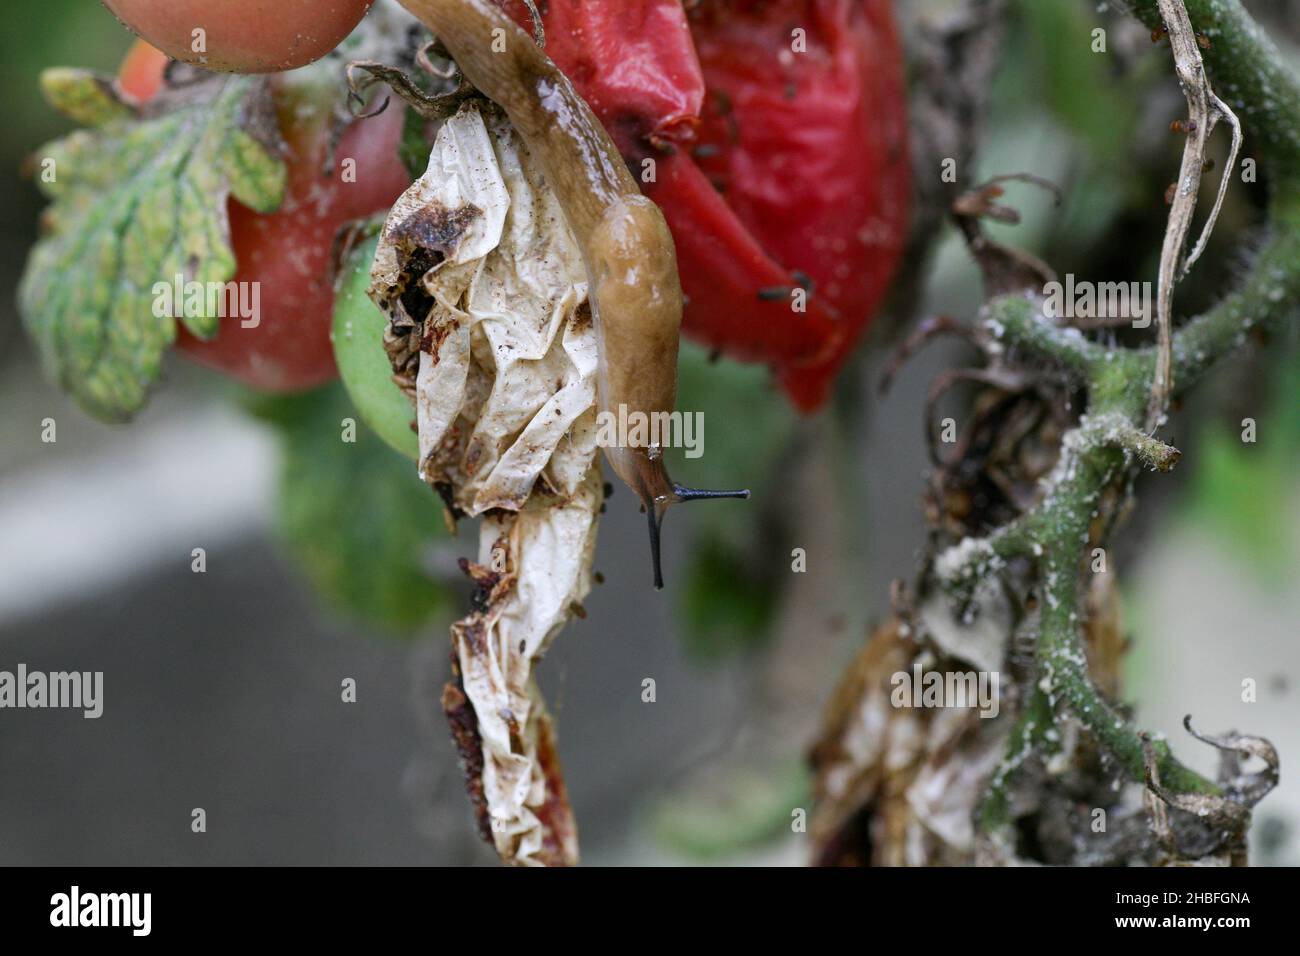 Un primo piano di una pesta di pomodoro in un giardino fresco. Gli insetti distruggono i frutti verdi e maturanti. Inoltre, le brocche trasportano le infezioni fra le piante. Una diminuzione significativa nella perdita di produttività di rendimento. Foto Stock